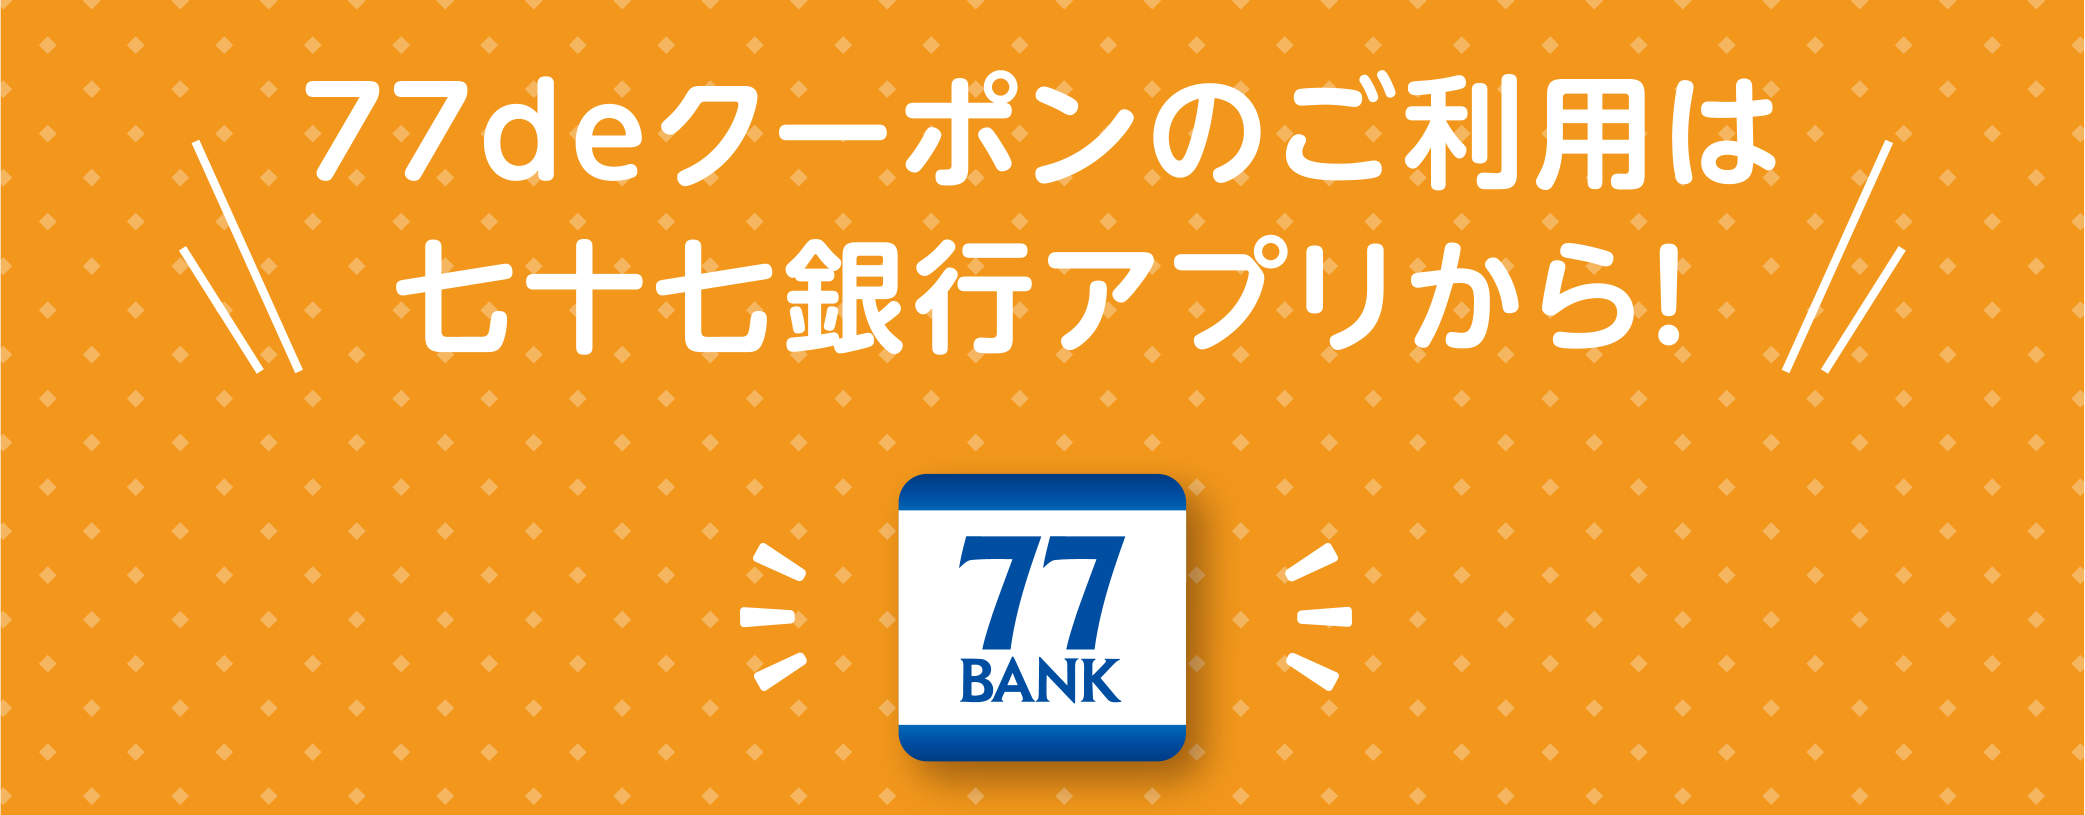 77deクーポンのご利用は七十七銀行アプリから!